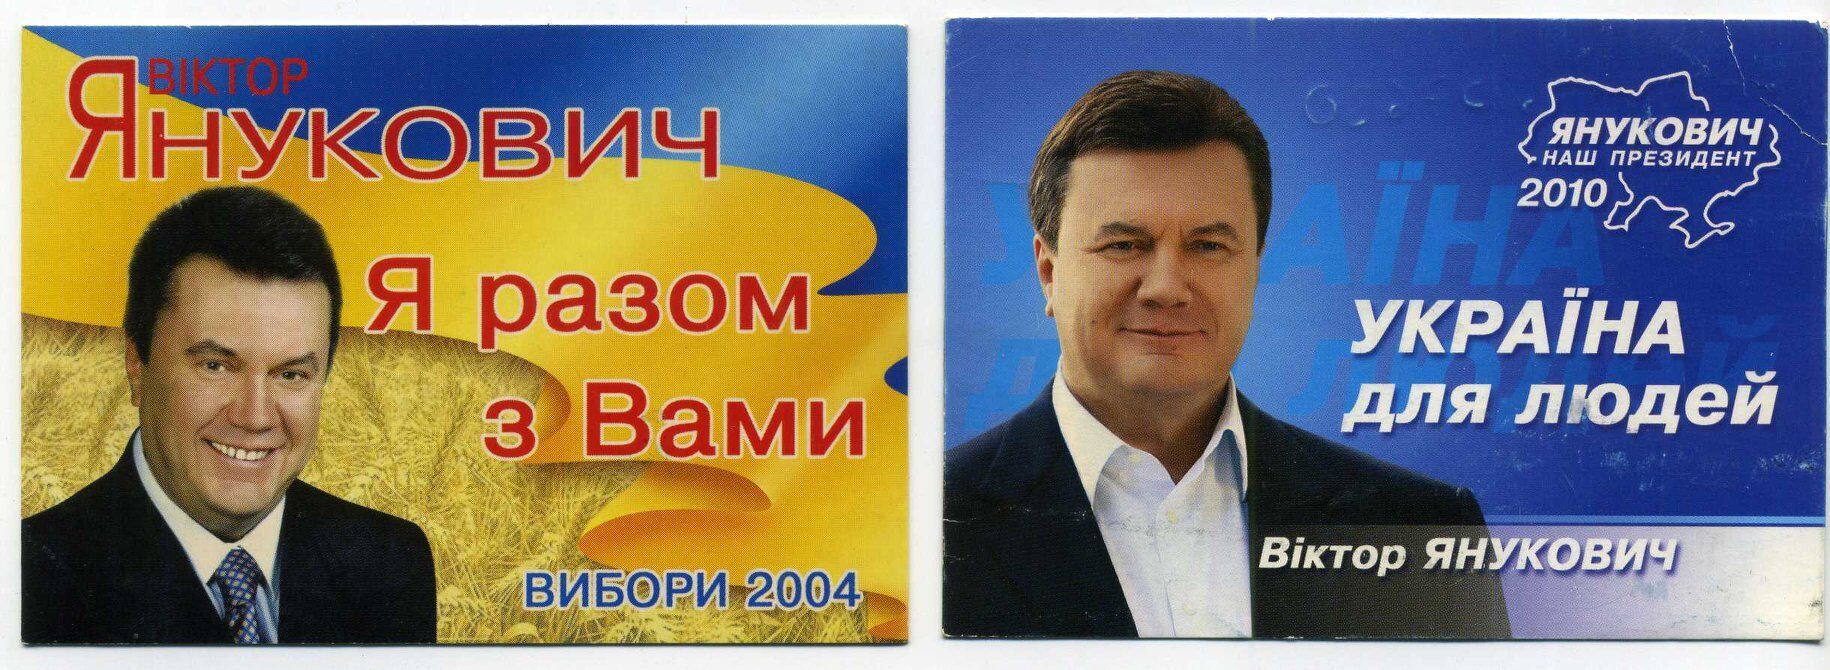 Календарики Виктора Януковича